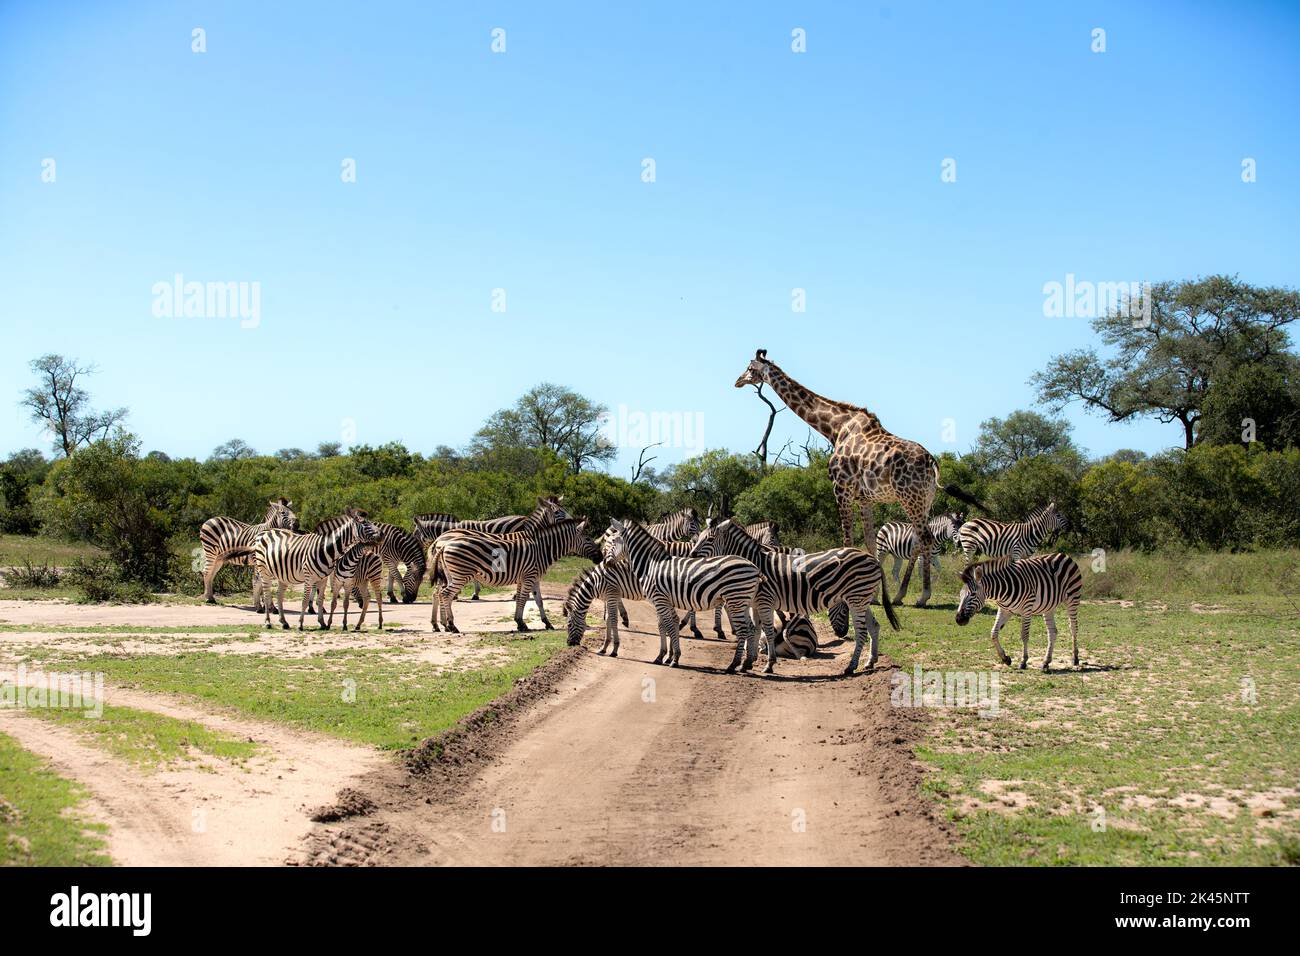 Un troupeau de zébrures, Equus quagga, et une girafe, Giraffa, se promènent sur une route Banque D'Images